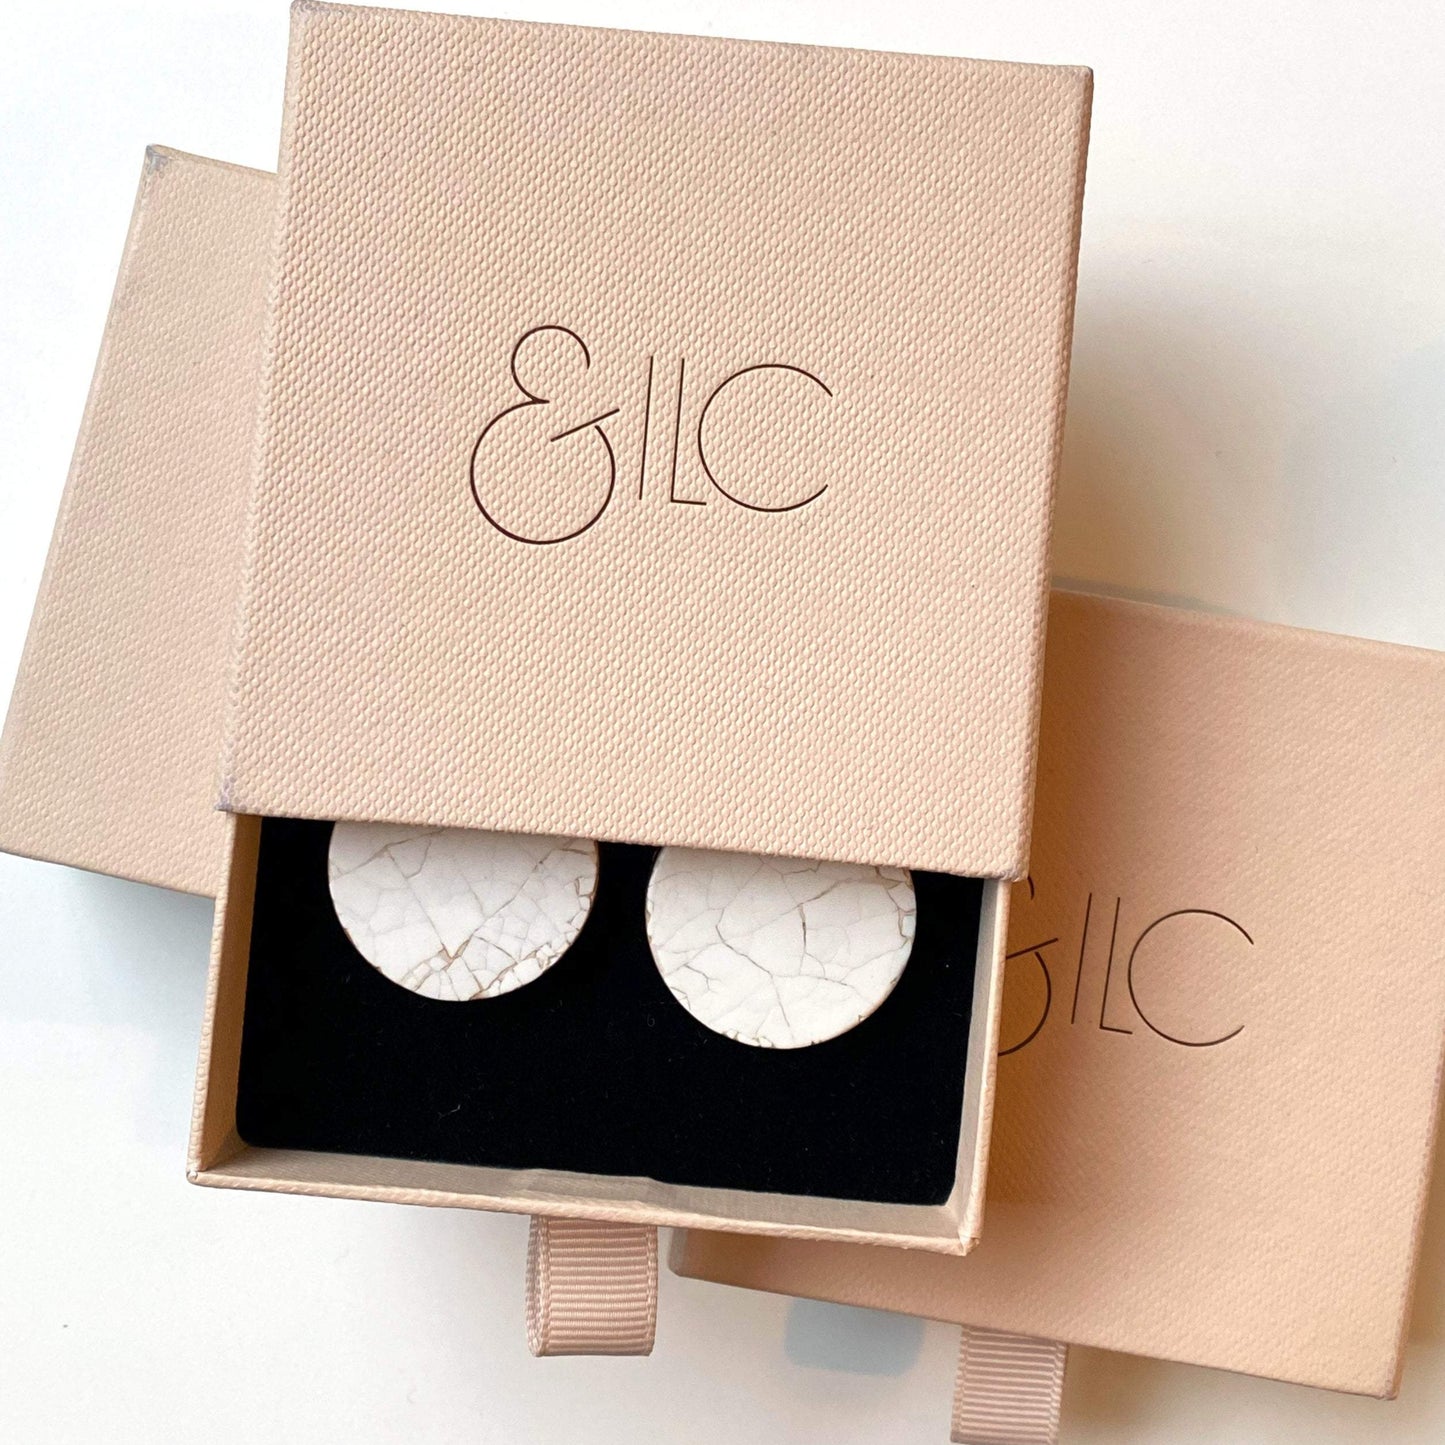 & ILC Earrings Tilly Earrings - Duck White